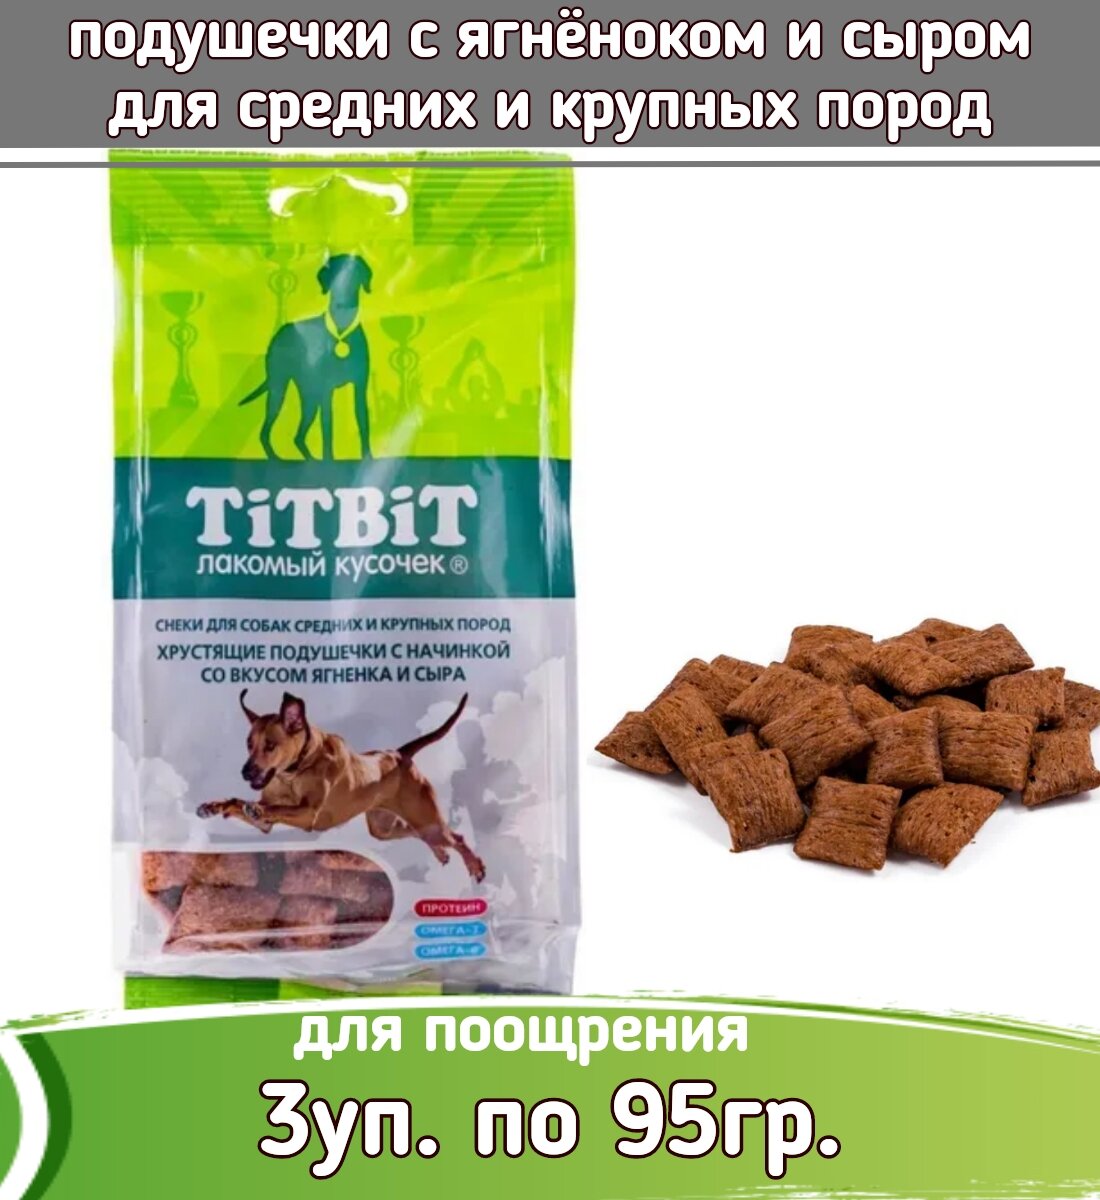 TiTBiT 3шт х 95г лакомство хрустящие подушечки с начинкой со вкусом ягненка и сыра для собак крупных и средних пород